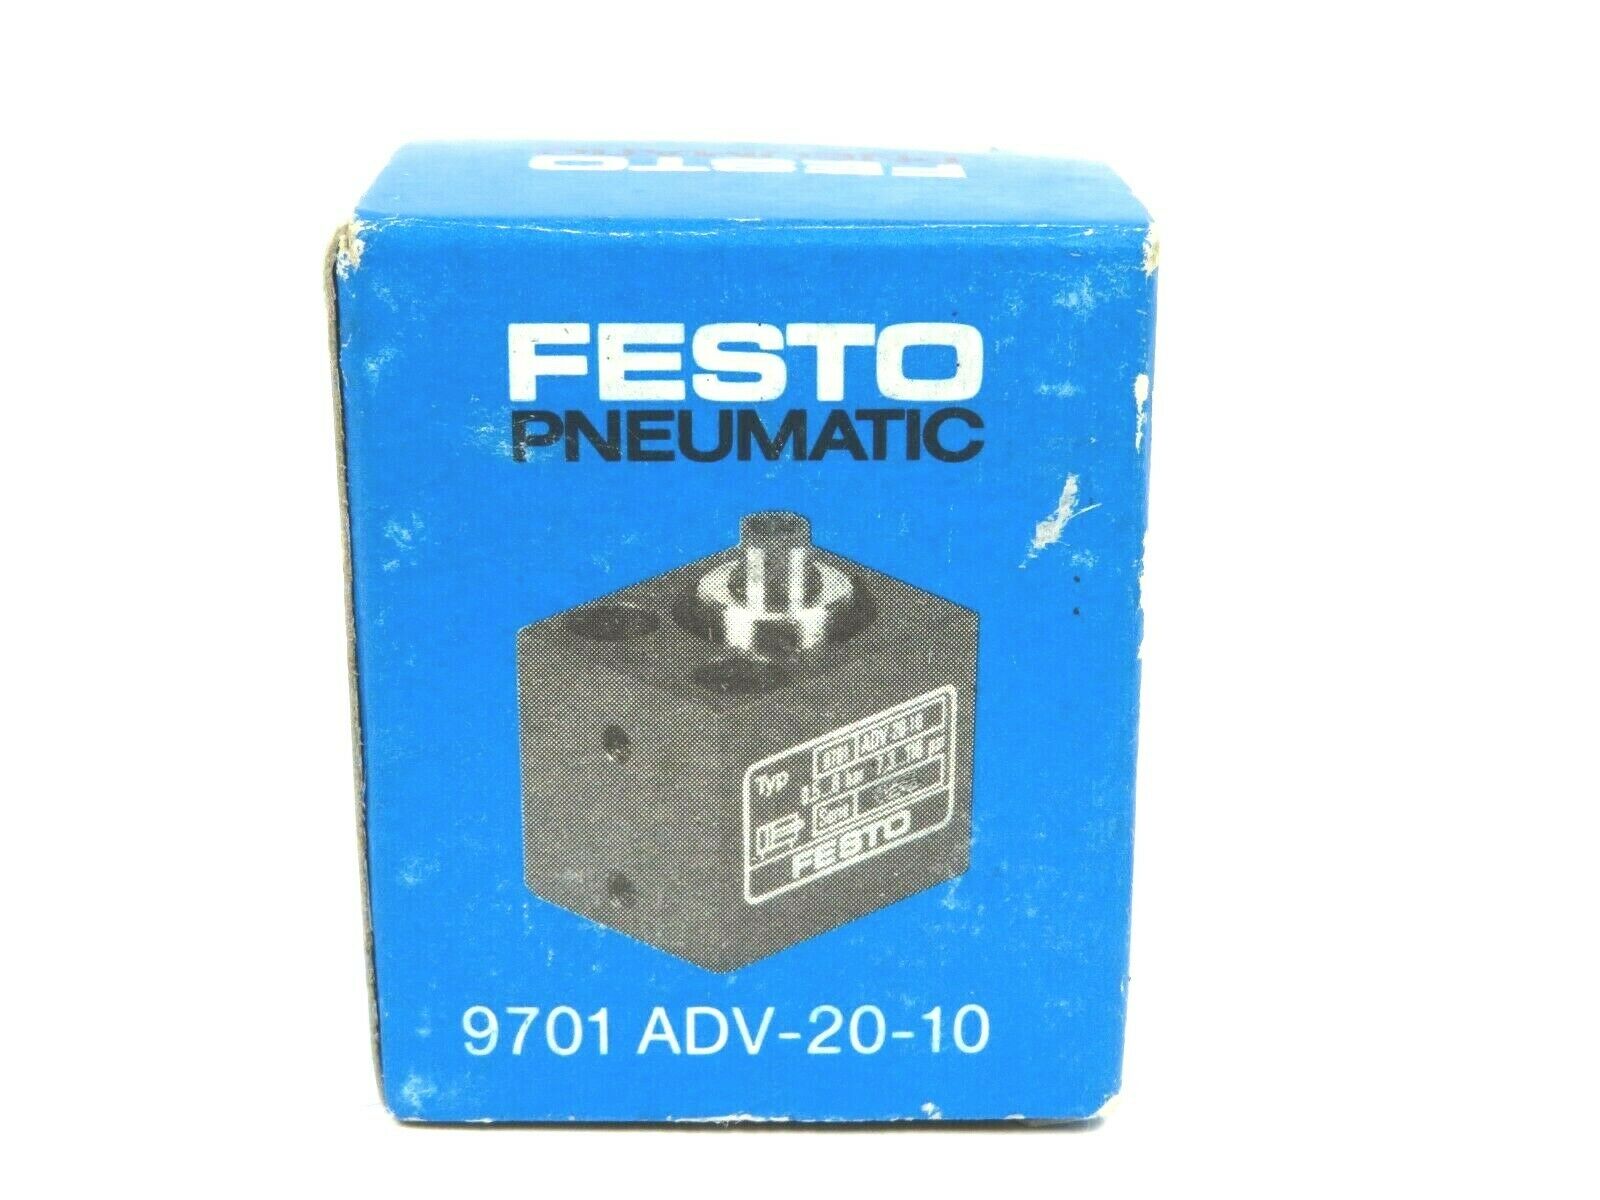 Festo Pneumatic Zylinder 9701 ADV-20-10  gecheckt S1230 